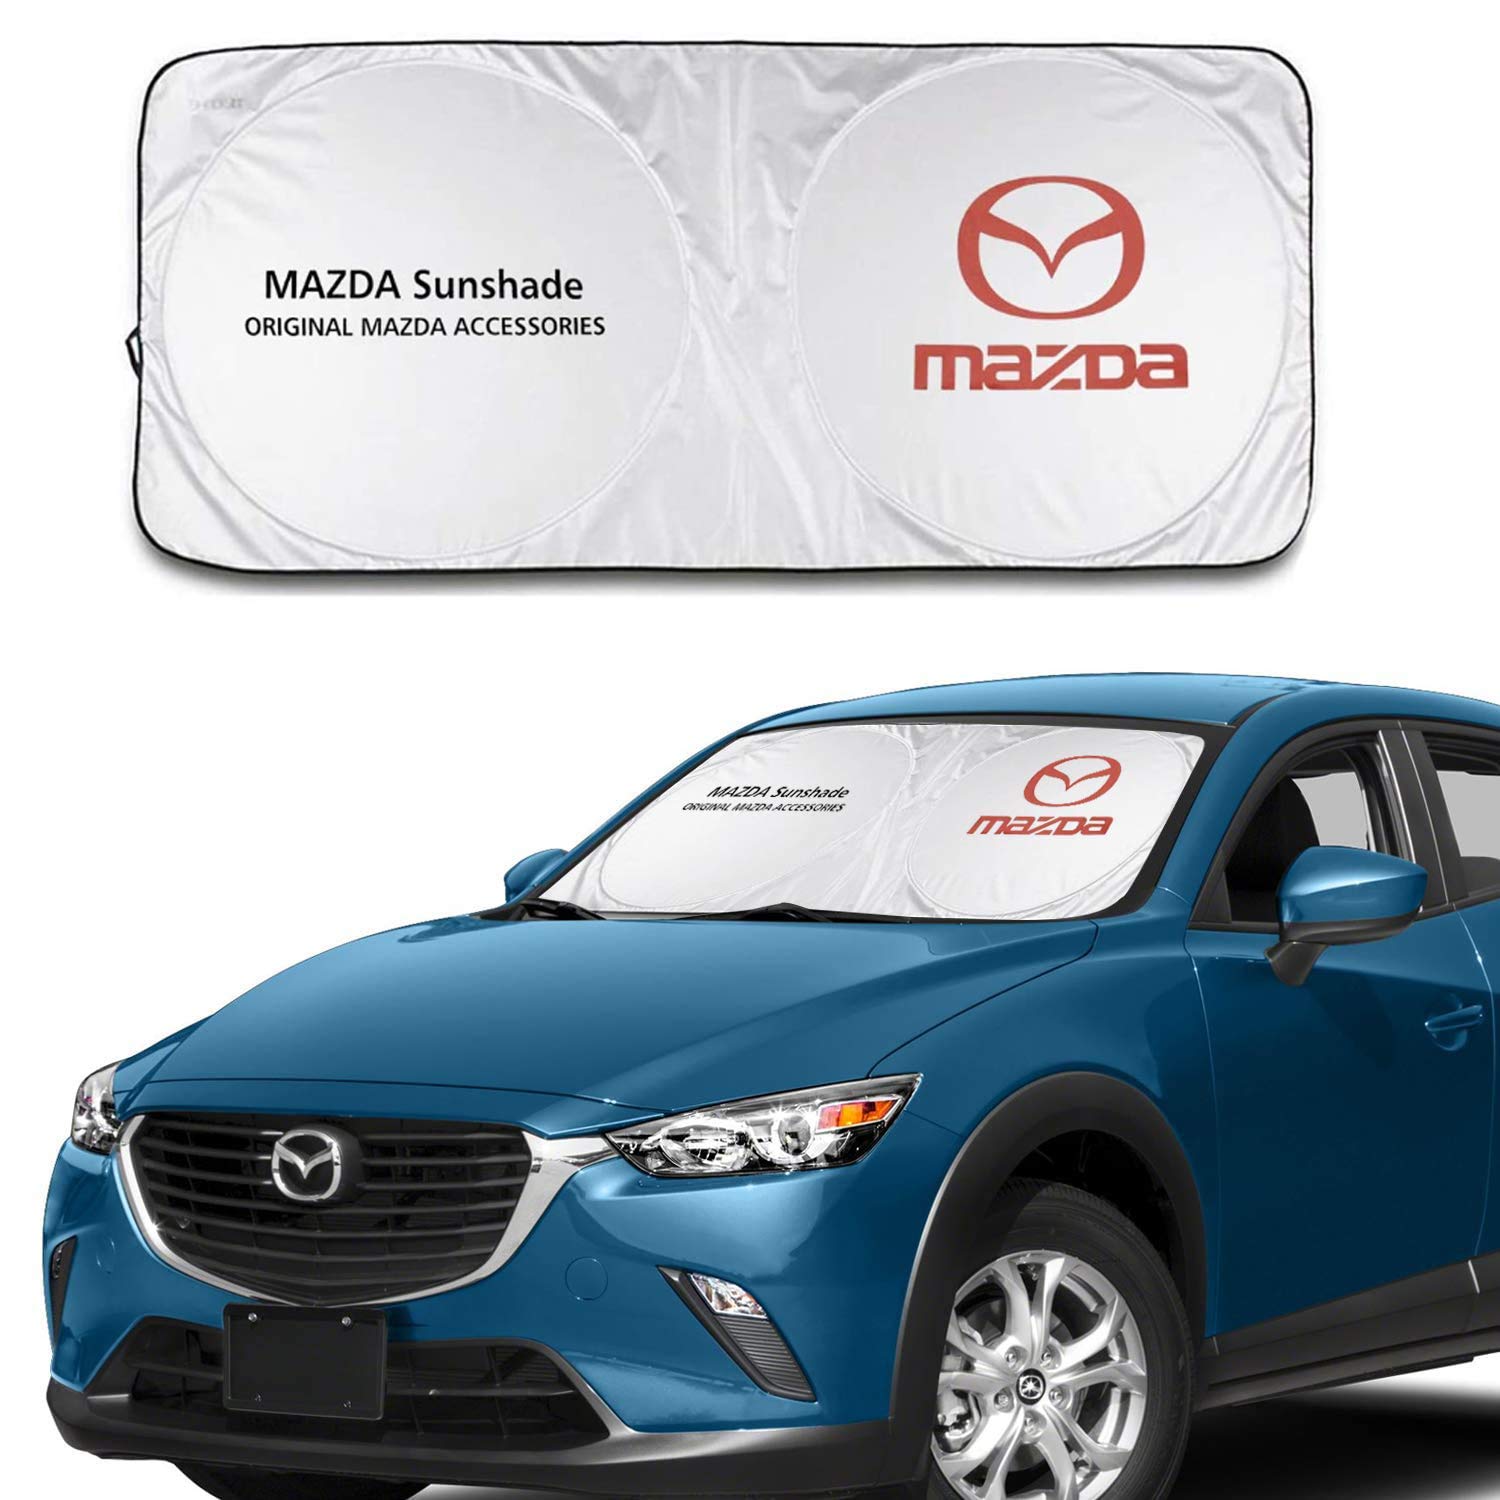 L&U Auto Windschutzscheibe Sonnenschutz, Blöcke UV-Strahlen, Faltbare Sonnenblende Schutz für Mazda 626 MX5 / Miata RX8 CX3 von L&U